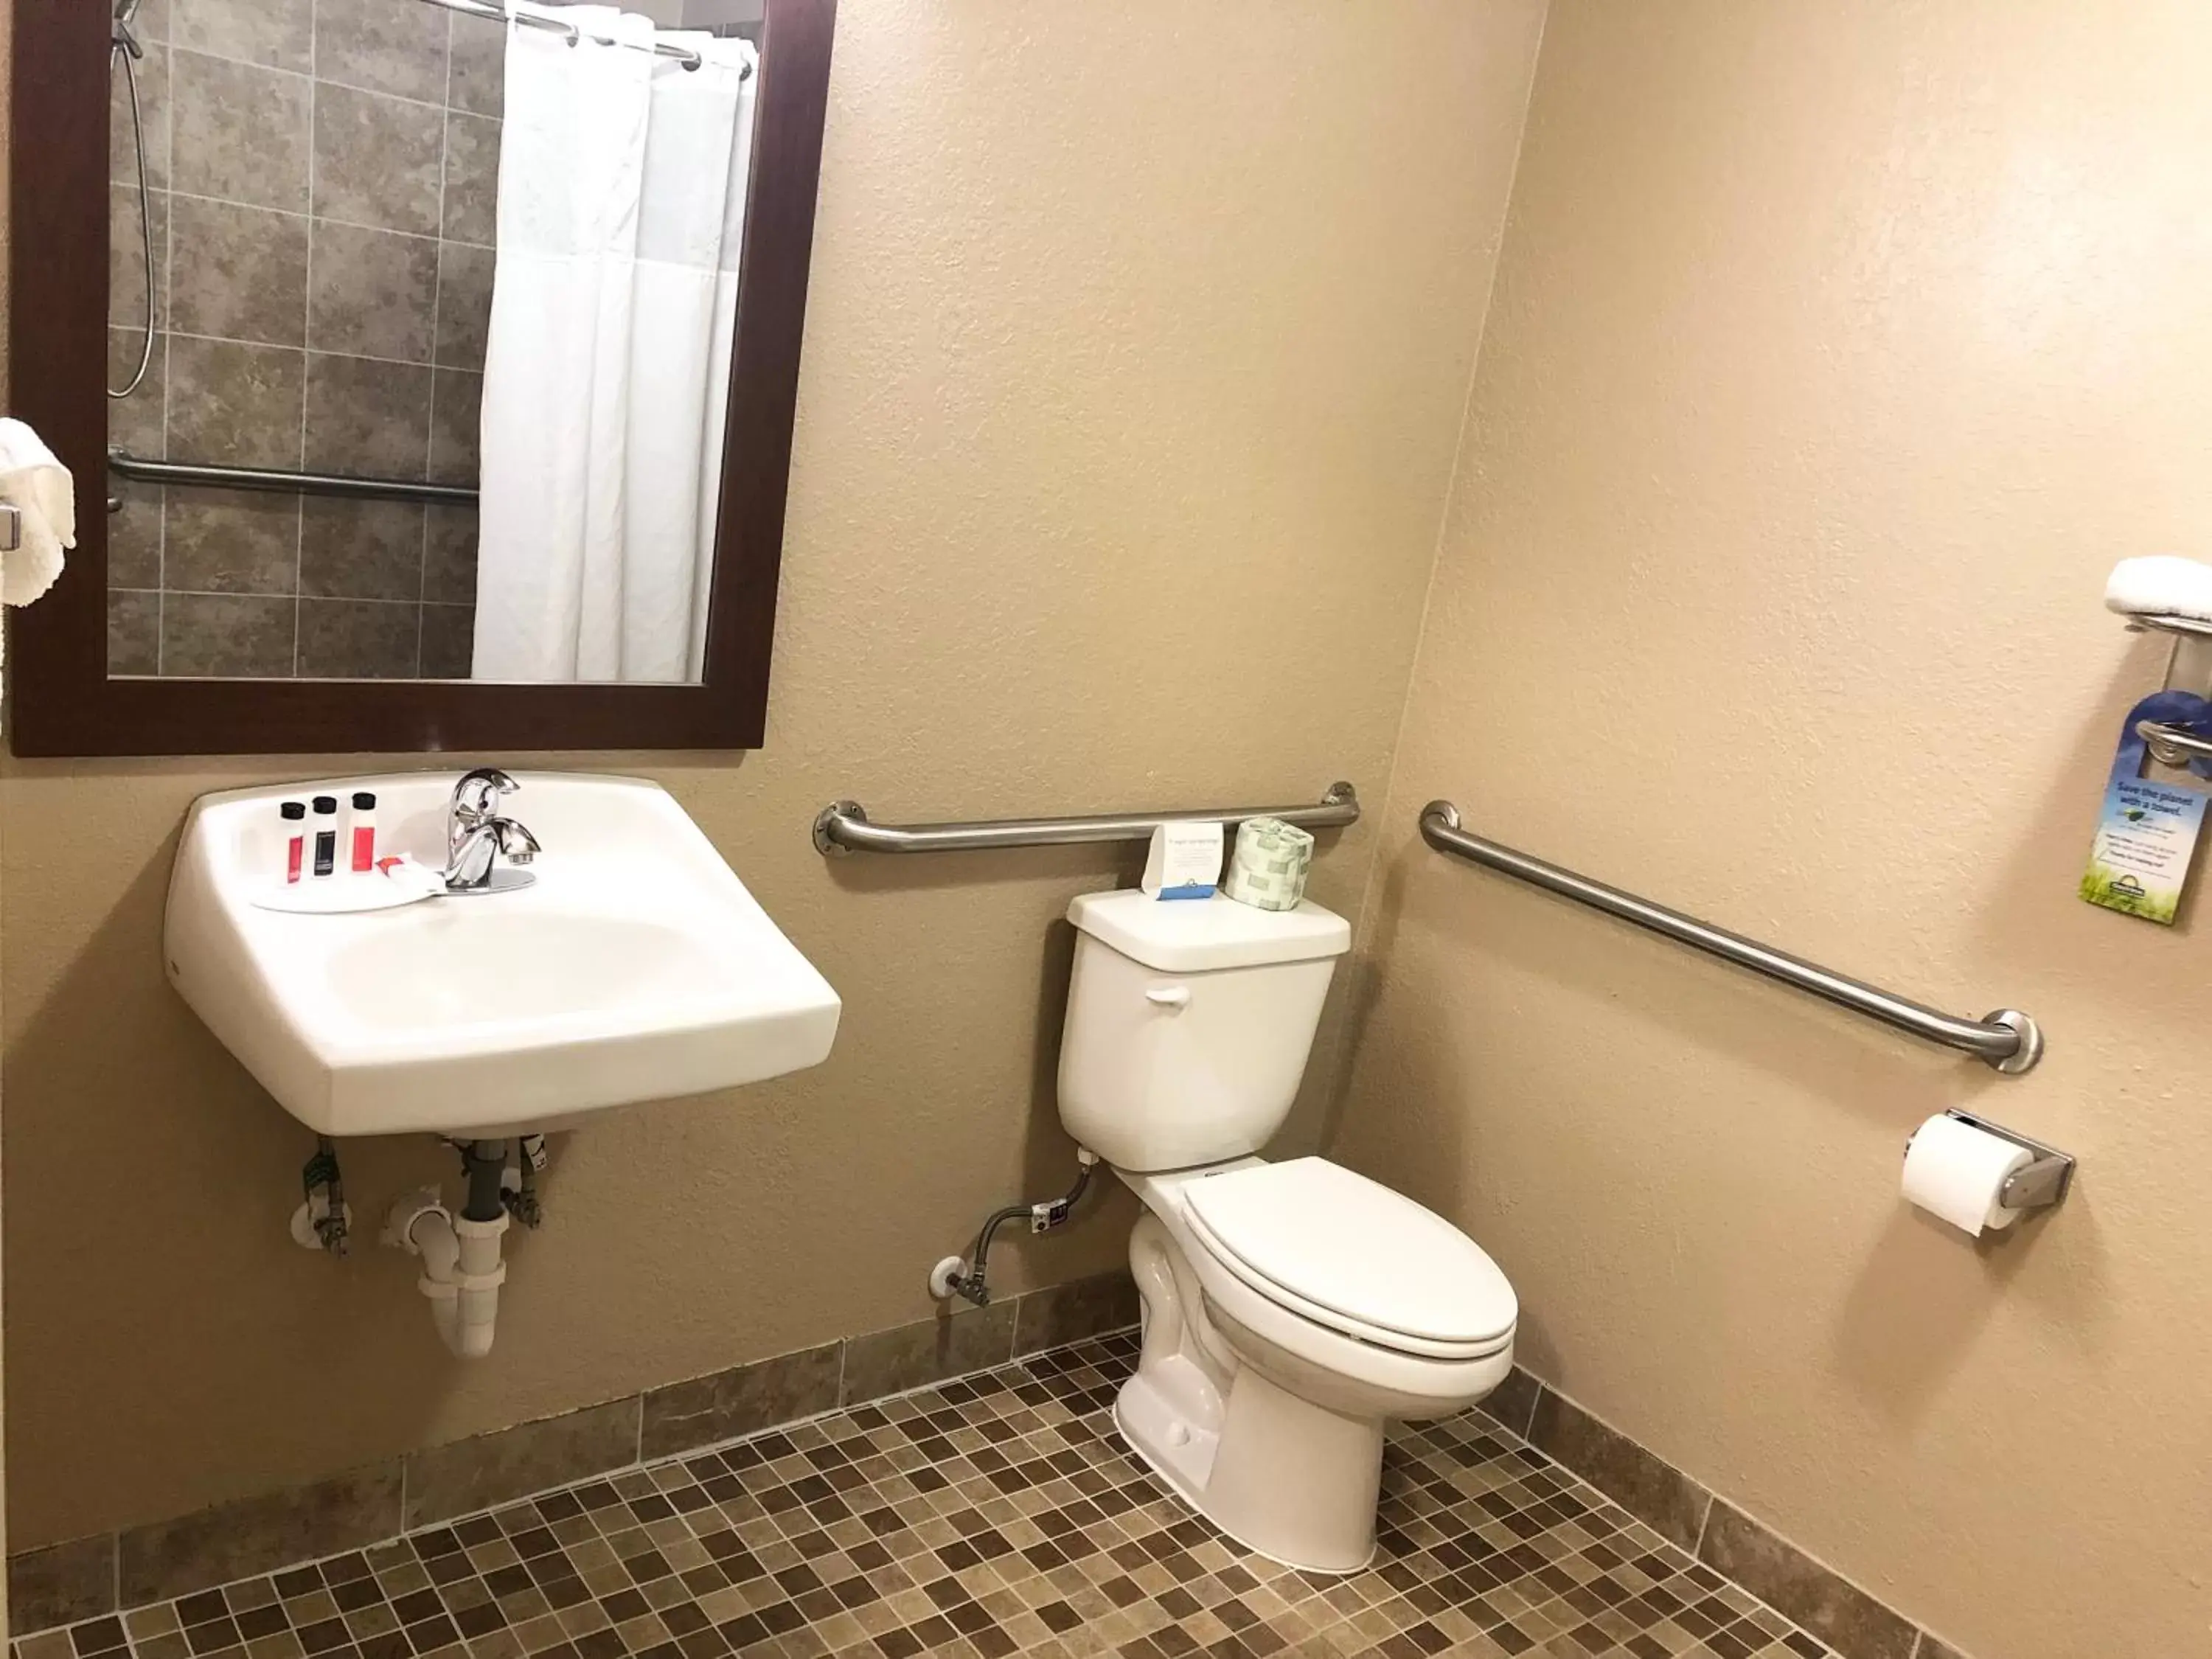 Bathroom in Days Inn by Wyndham West Des Moines